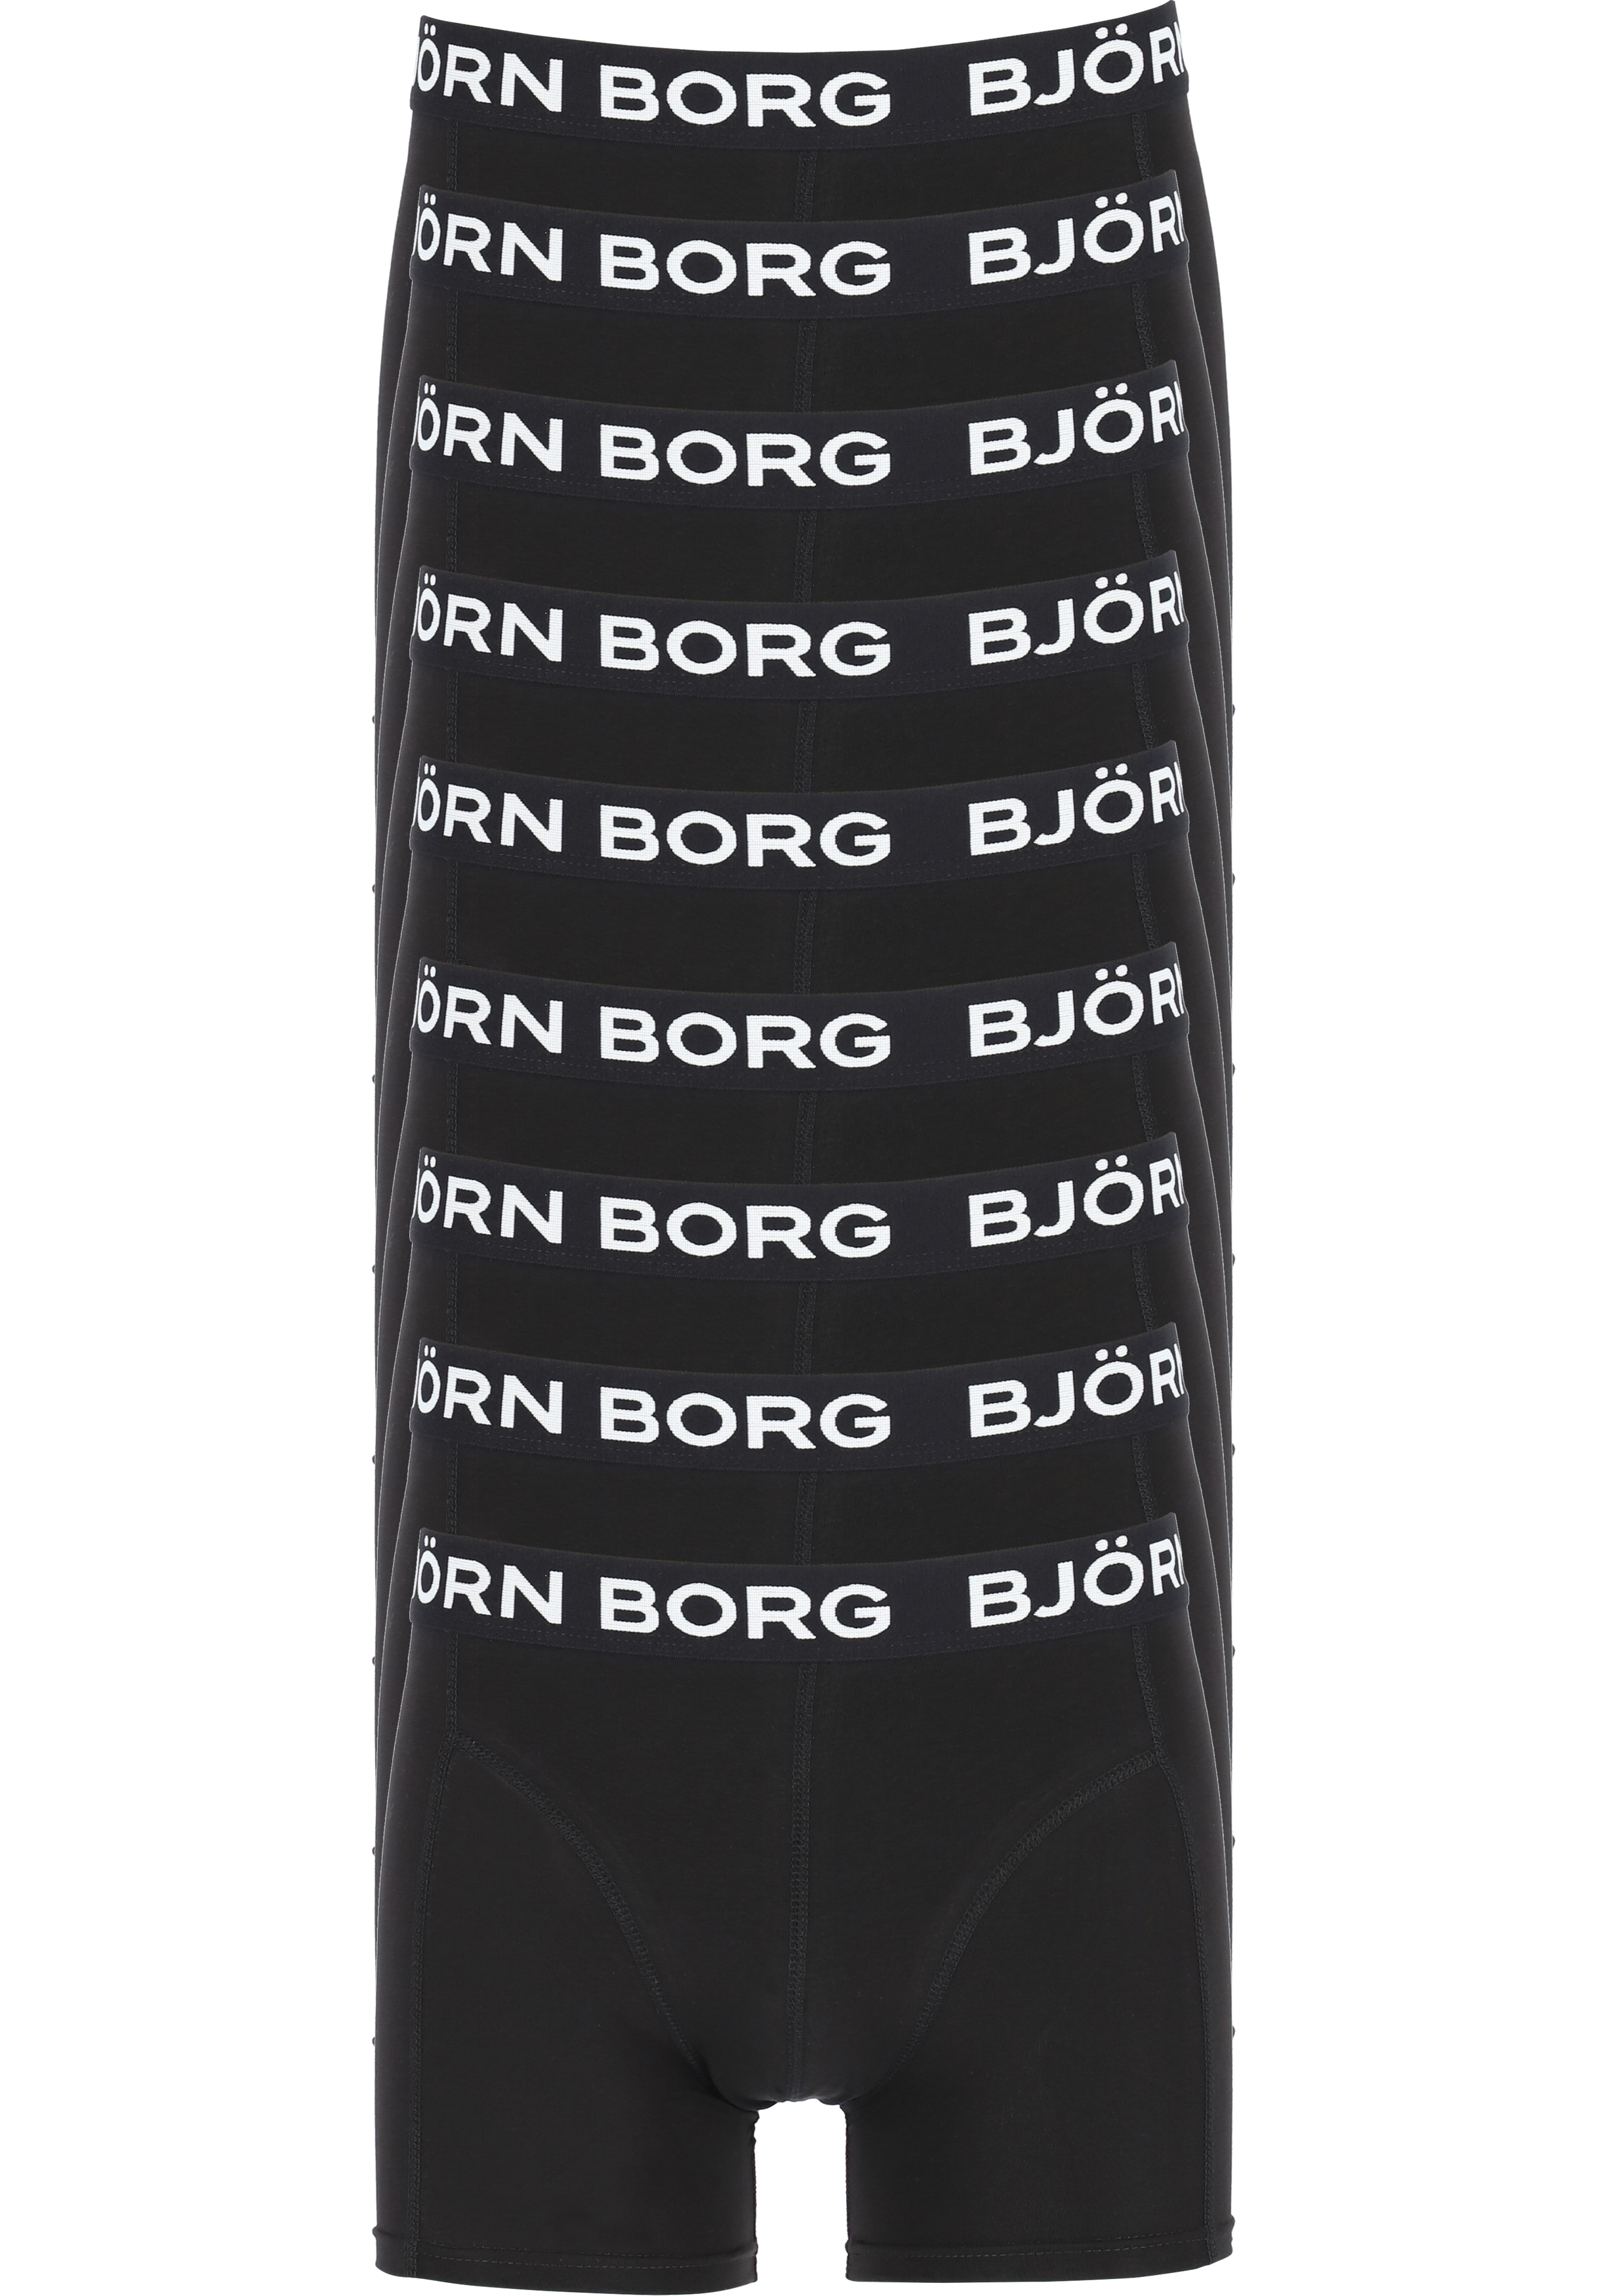 Ringlet gloeilamp Mis Bjorn Borg boxershorts Essential (9-pack), heren boxers normale lengte,...  - SALE tot 70% korting